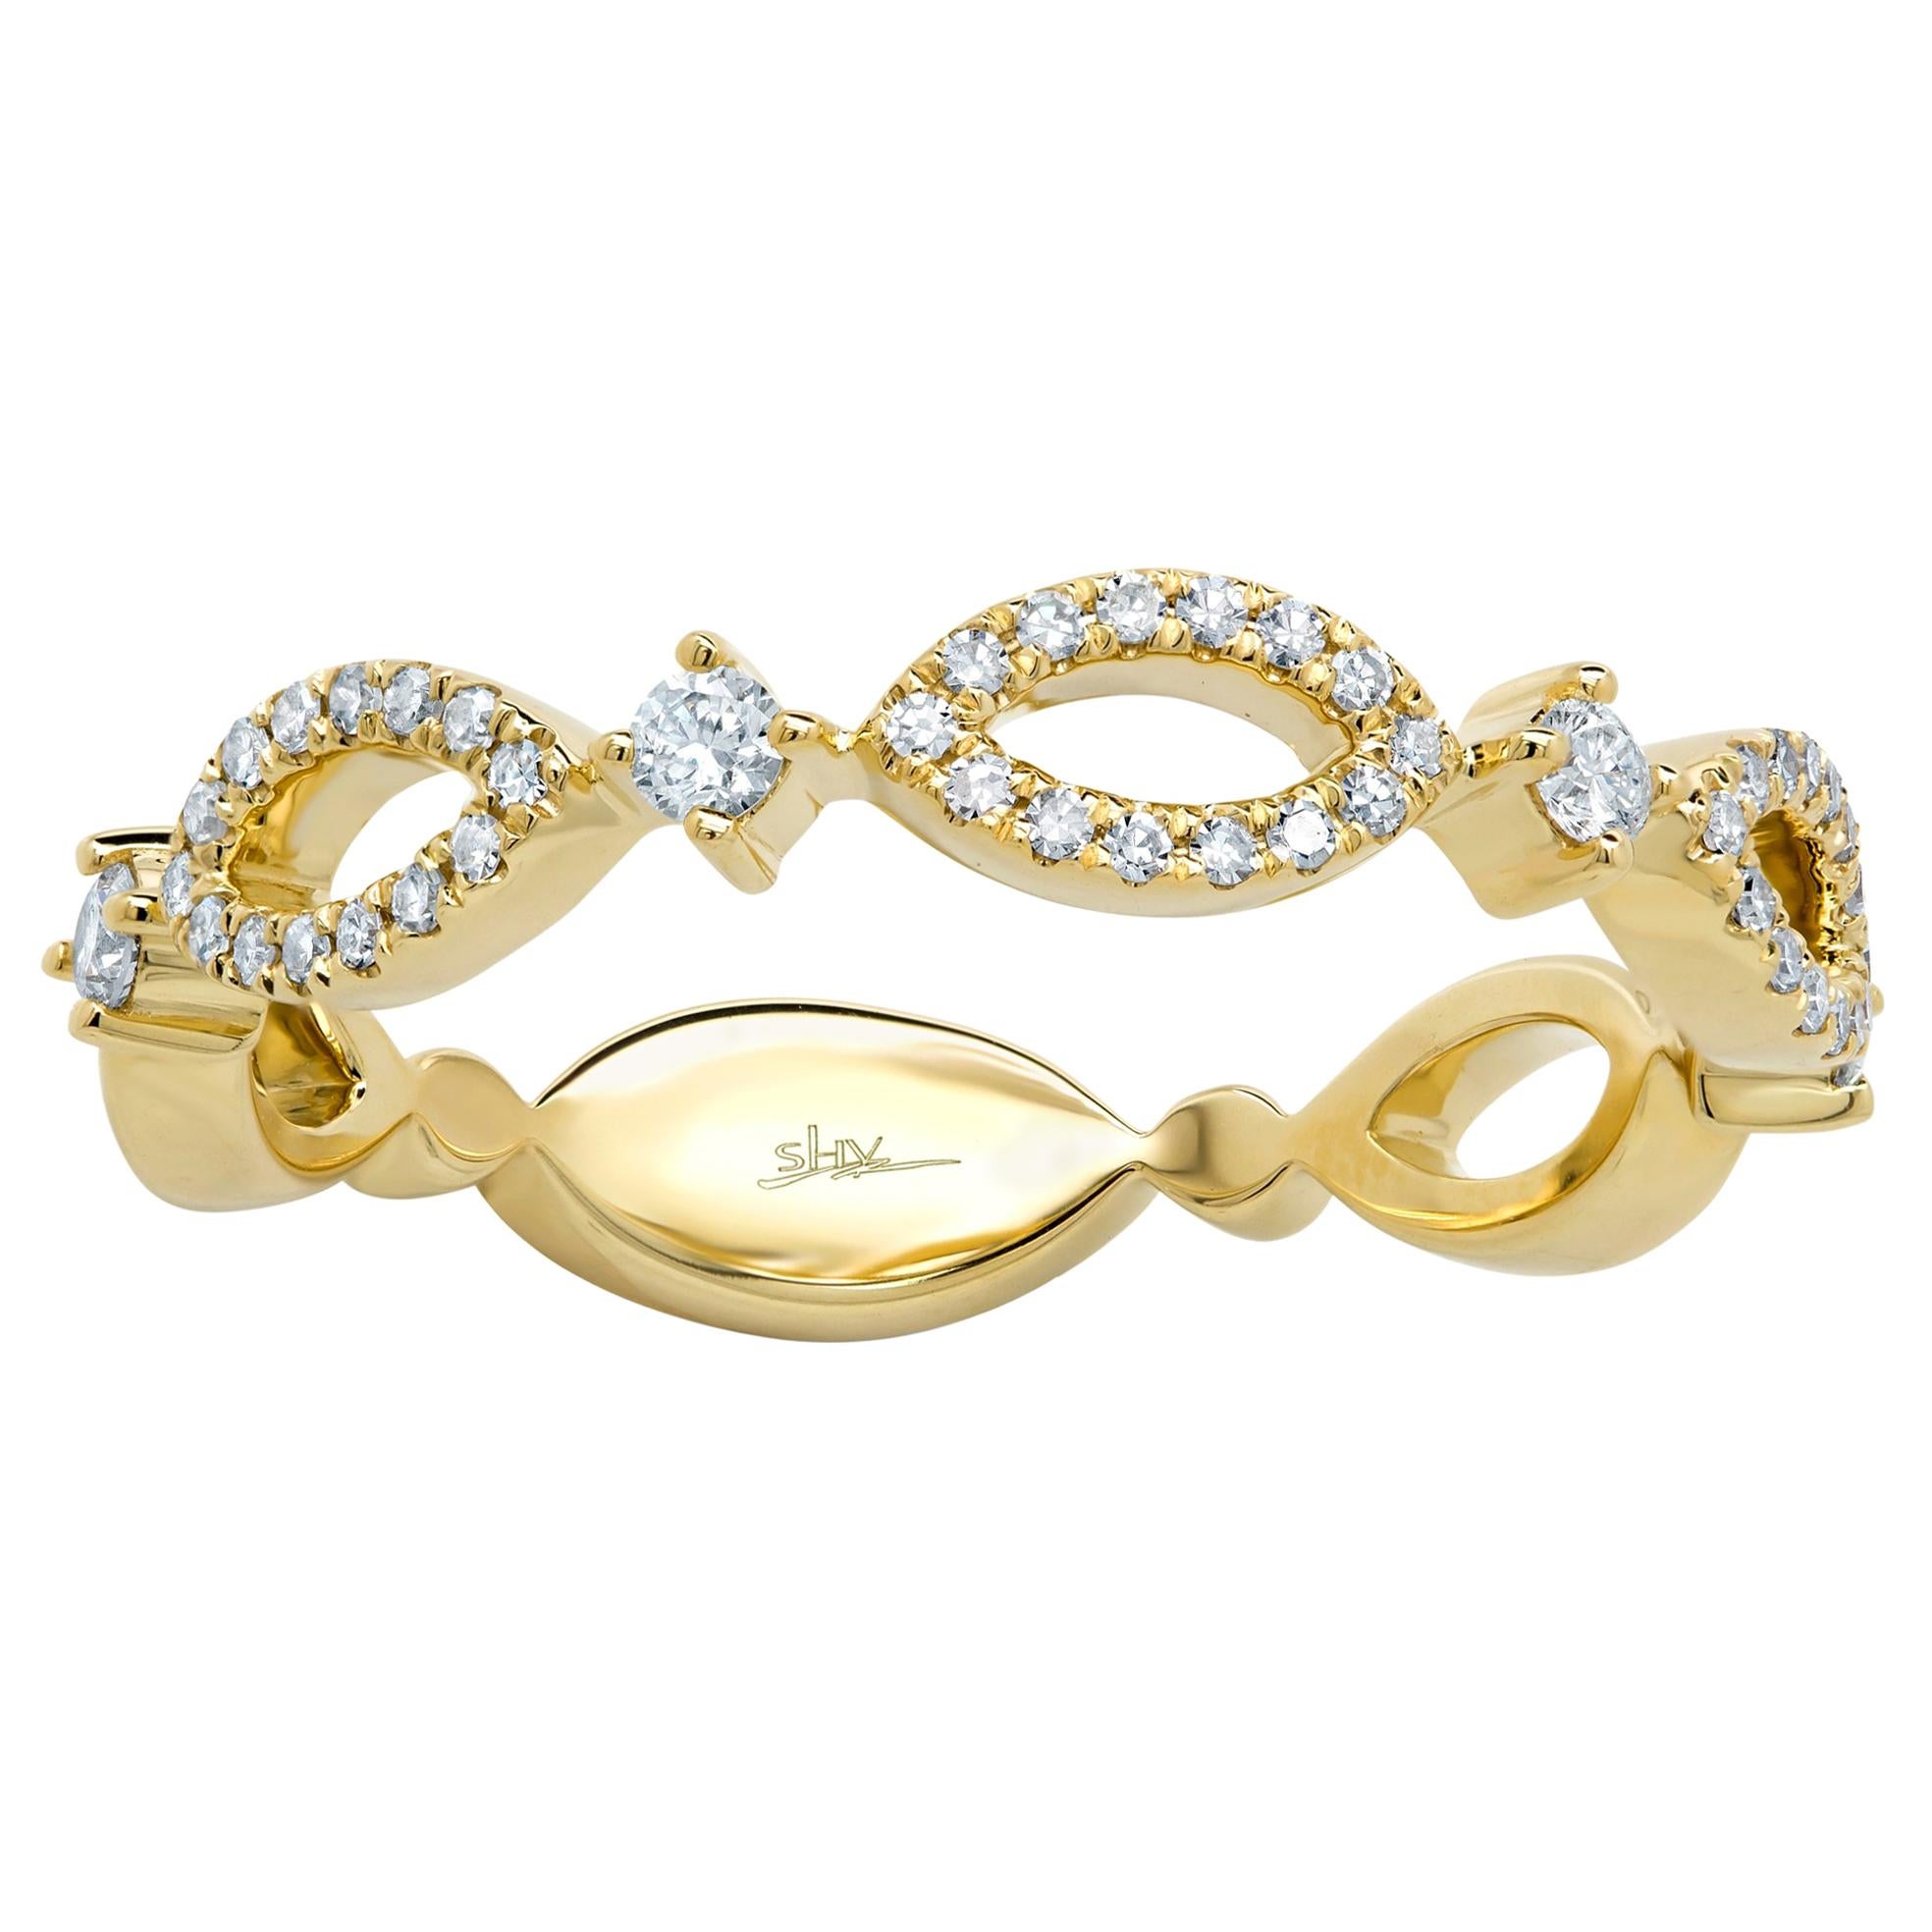 Rachel Koen Diamond Ladies Ring 14K Yellow Gold 0.22cttw For Sale